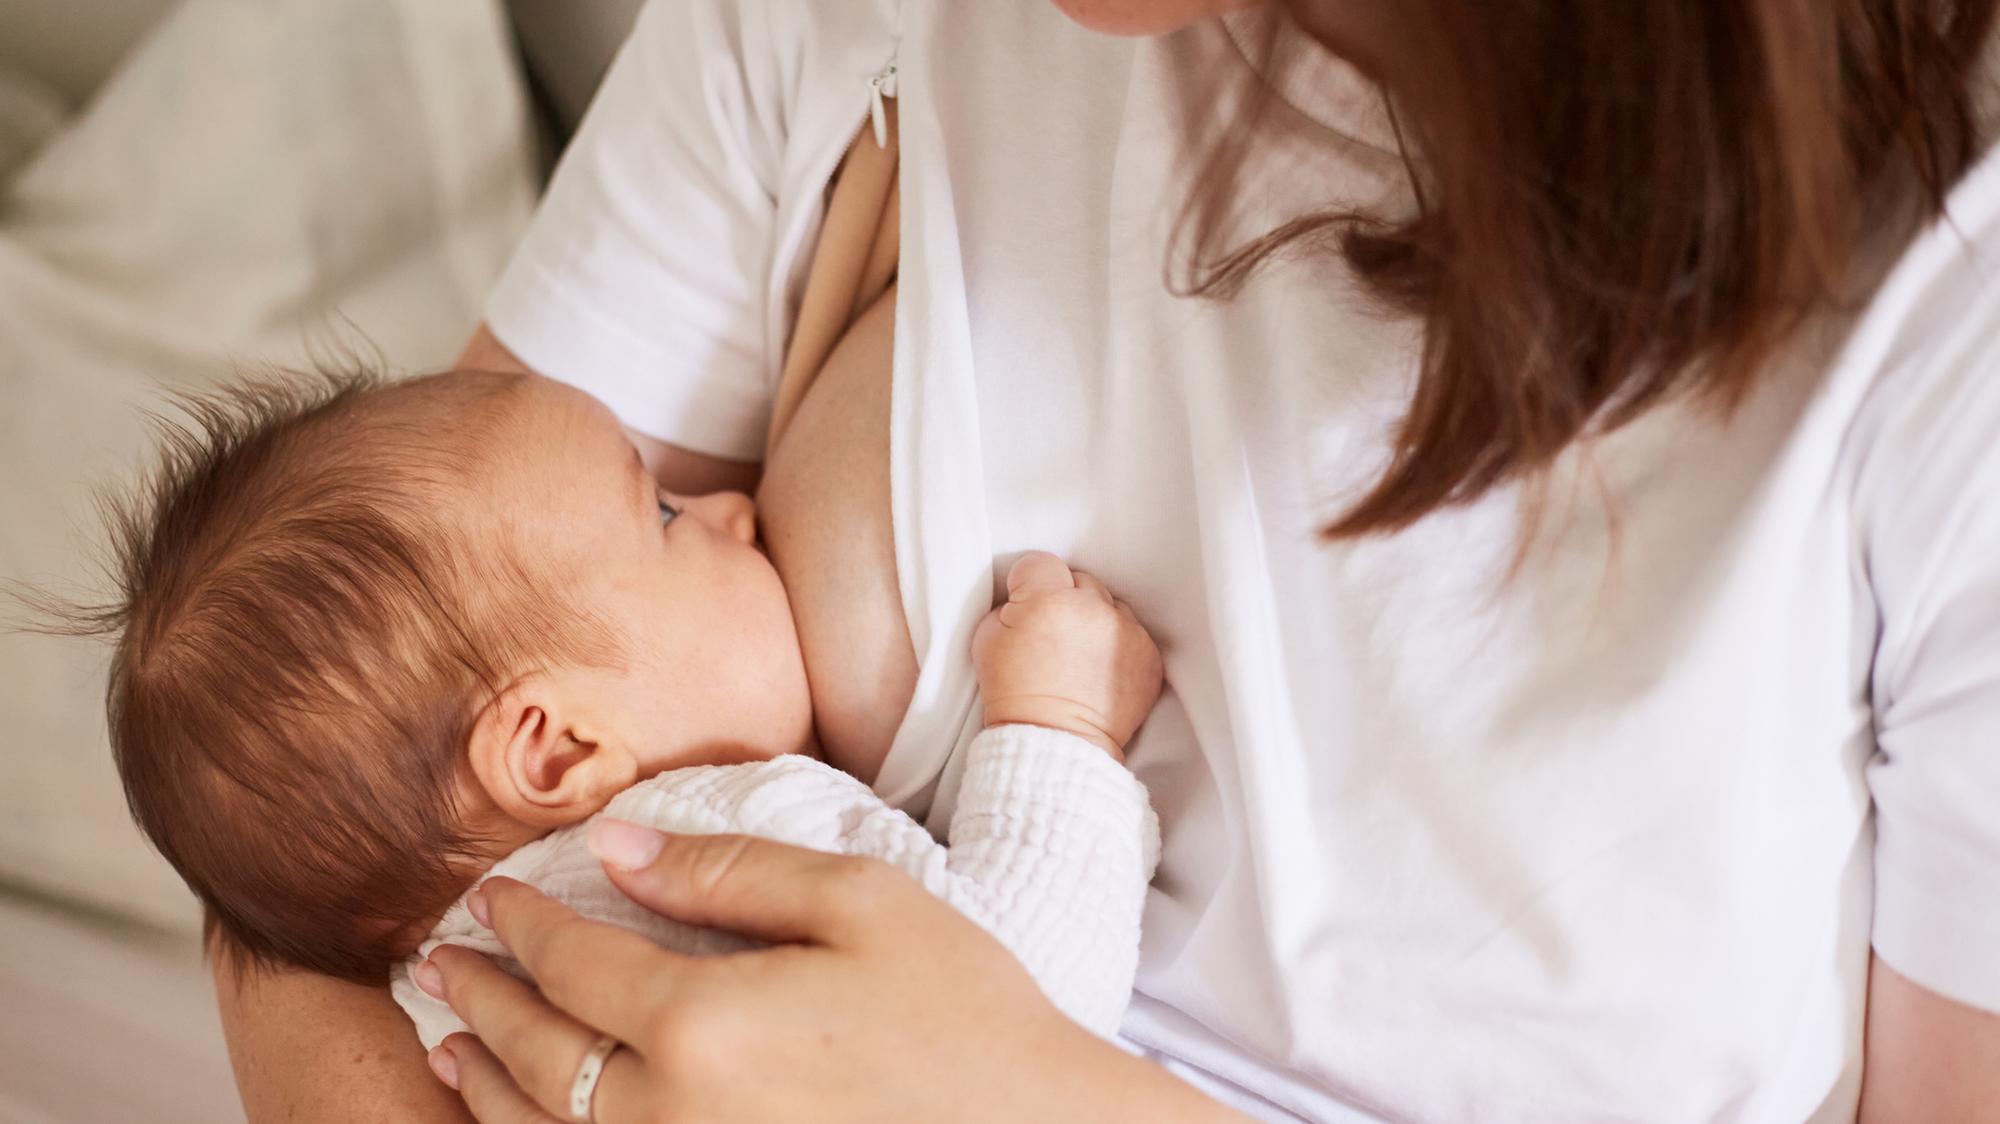 Tušili ste, že dojčenie pomáha pri chudnutí a materské mlieko sa tvorí už v  tehotenstve? 12 zaujímavostí, ktoré by mala poznať každá mama | Najmama.sk